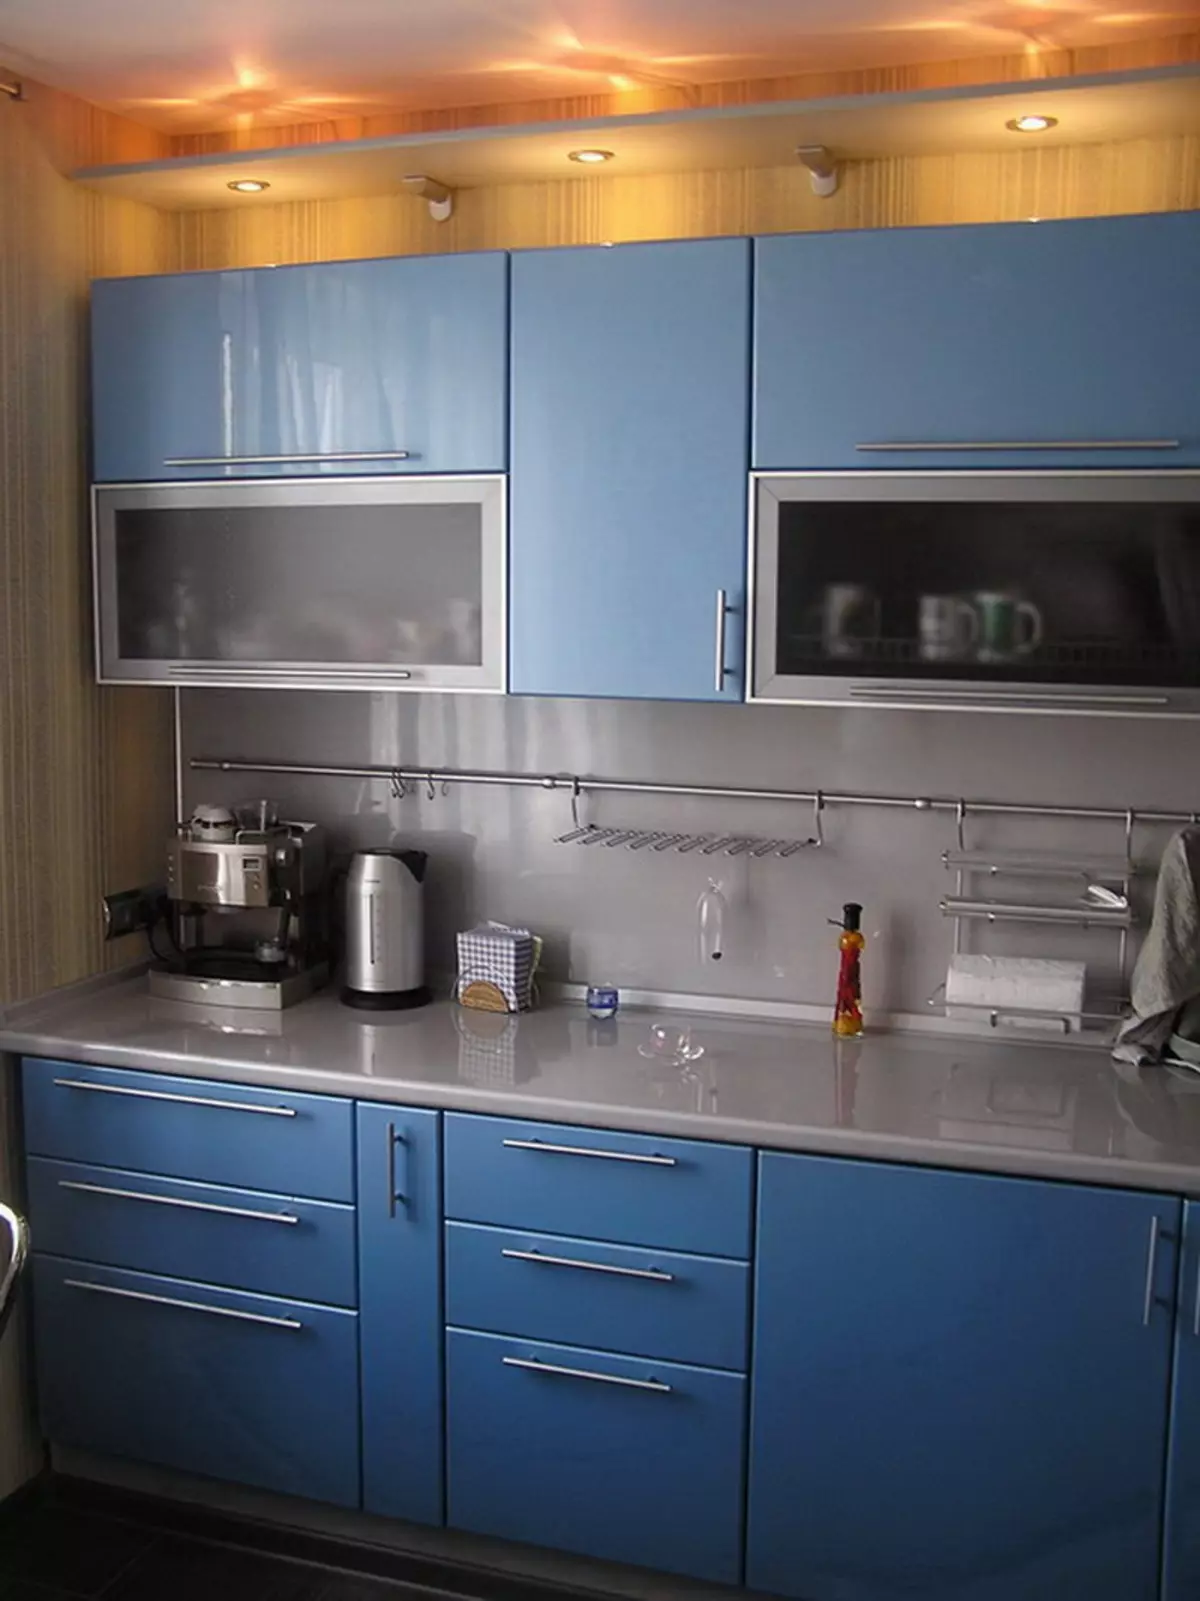 آشپزخانه آبی (82 عکس): چه رنگی در داخل یک آشپزخانه آبی ترکیب شده است؟ طراحی آشپزخانه در آبی رنگ آبی و آبی تیره 9555_10